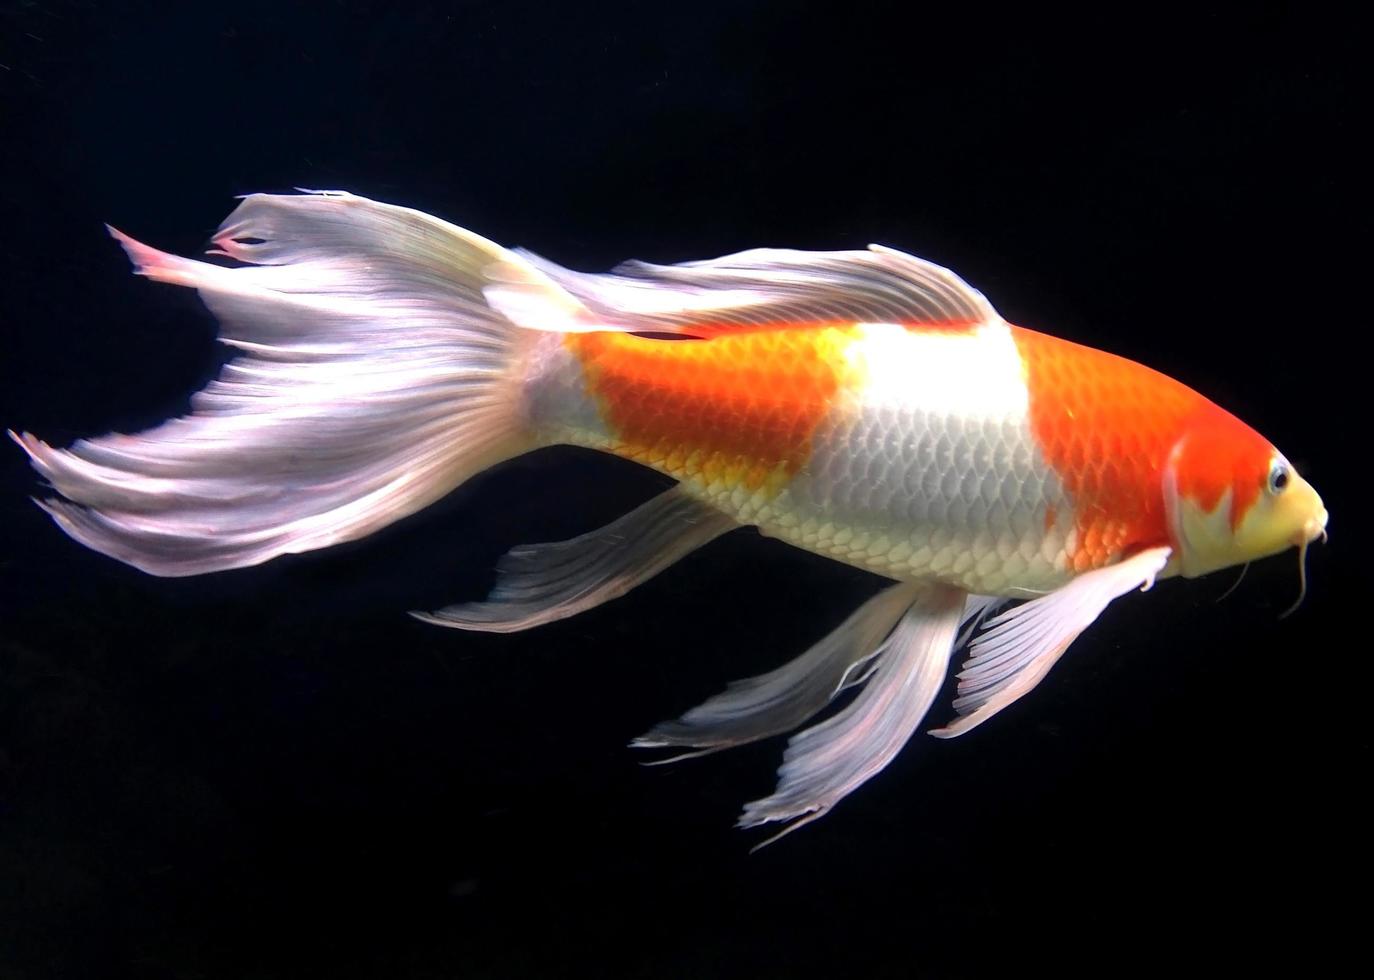 pesci bianchi e arancioni in acquario foto